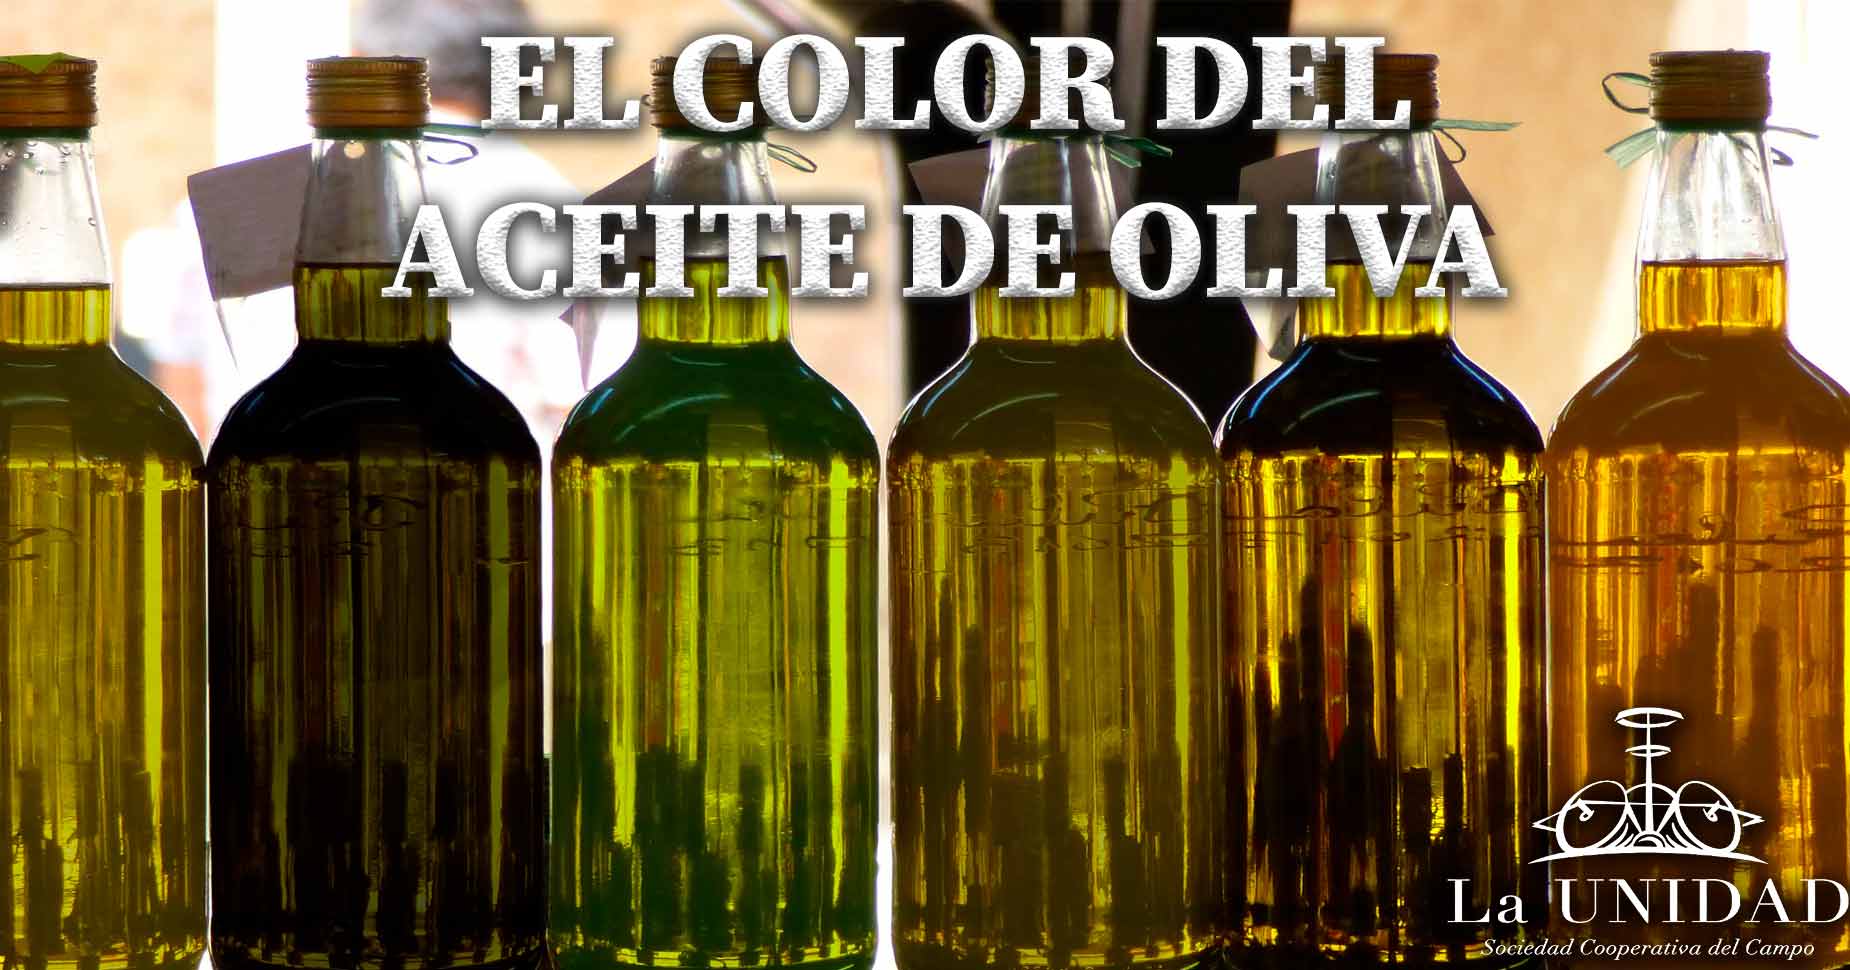 El color del aceite de oliva